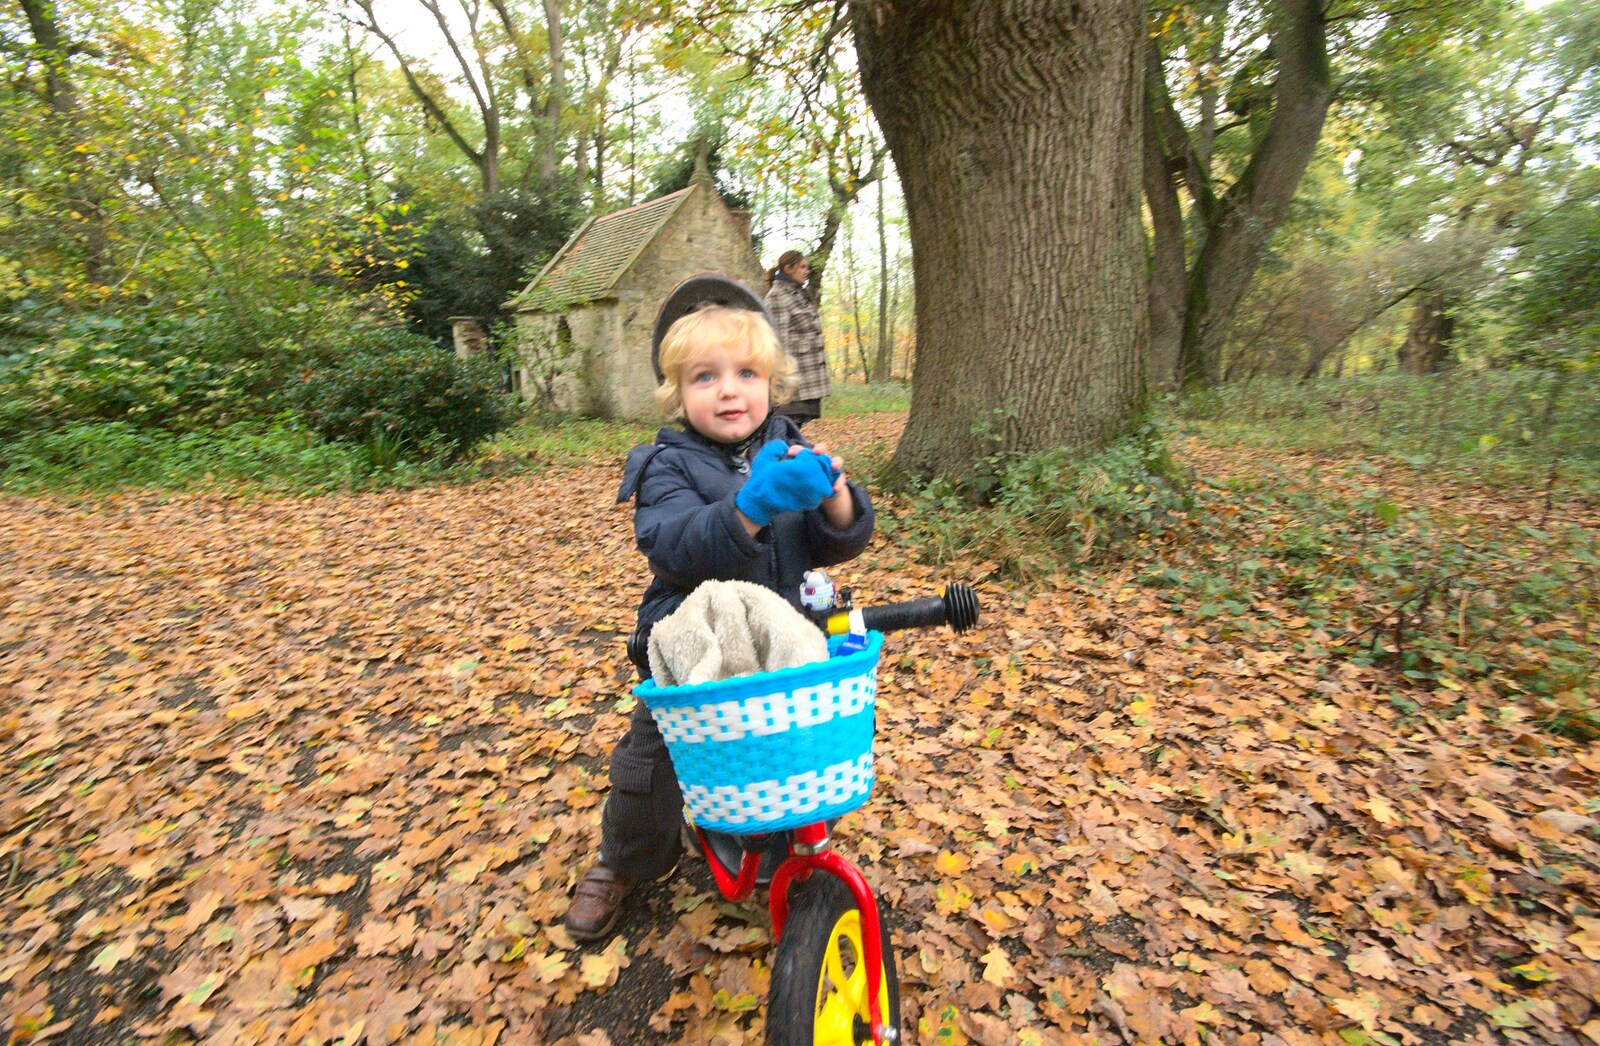 Fred on his balance bike from Autumn in Thornham Estate, Thornham, Suffolk - 6th November 2011